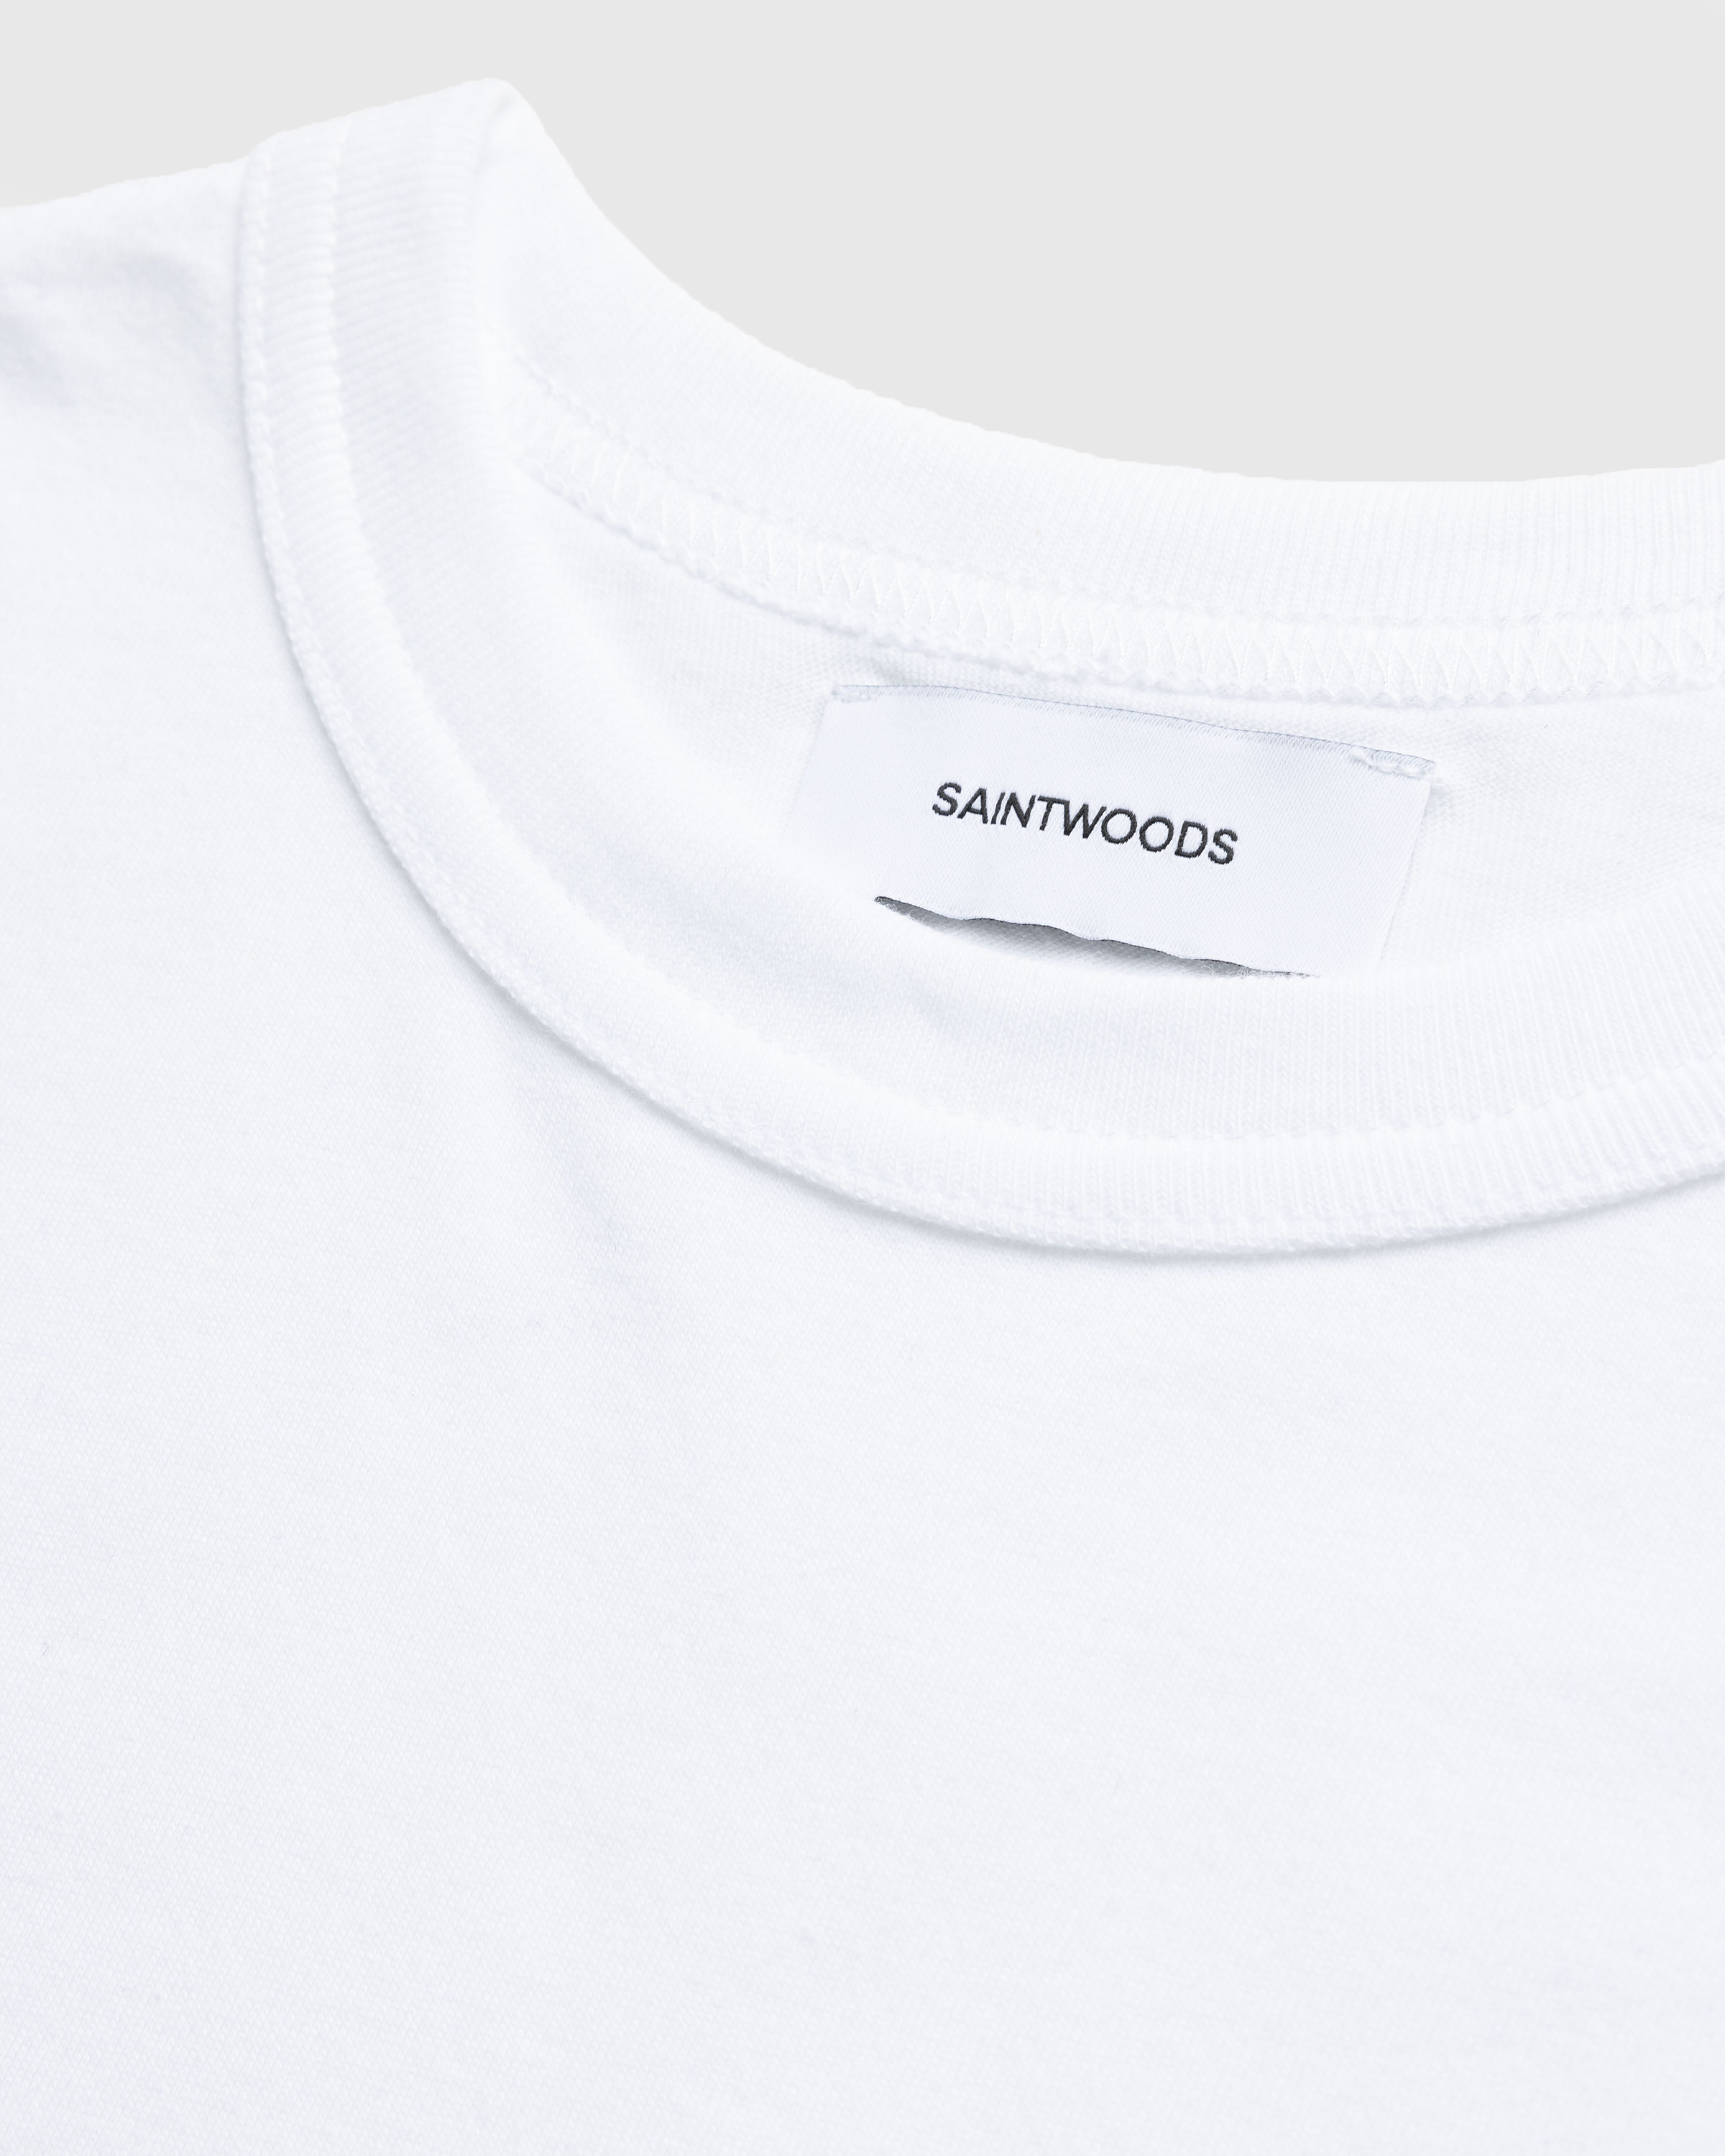 Saintwoods - Big Joke Tee White - Clothing - White - Image 7